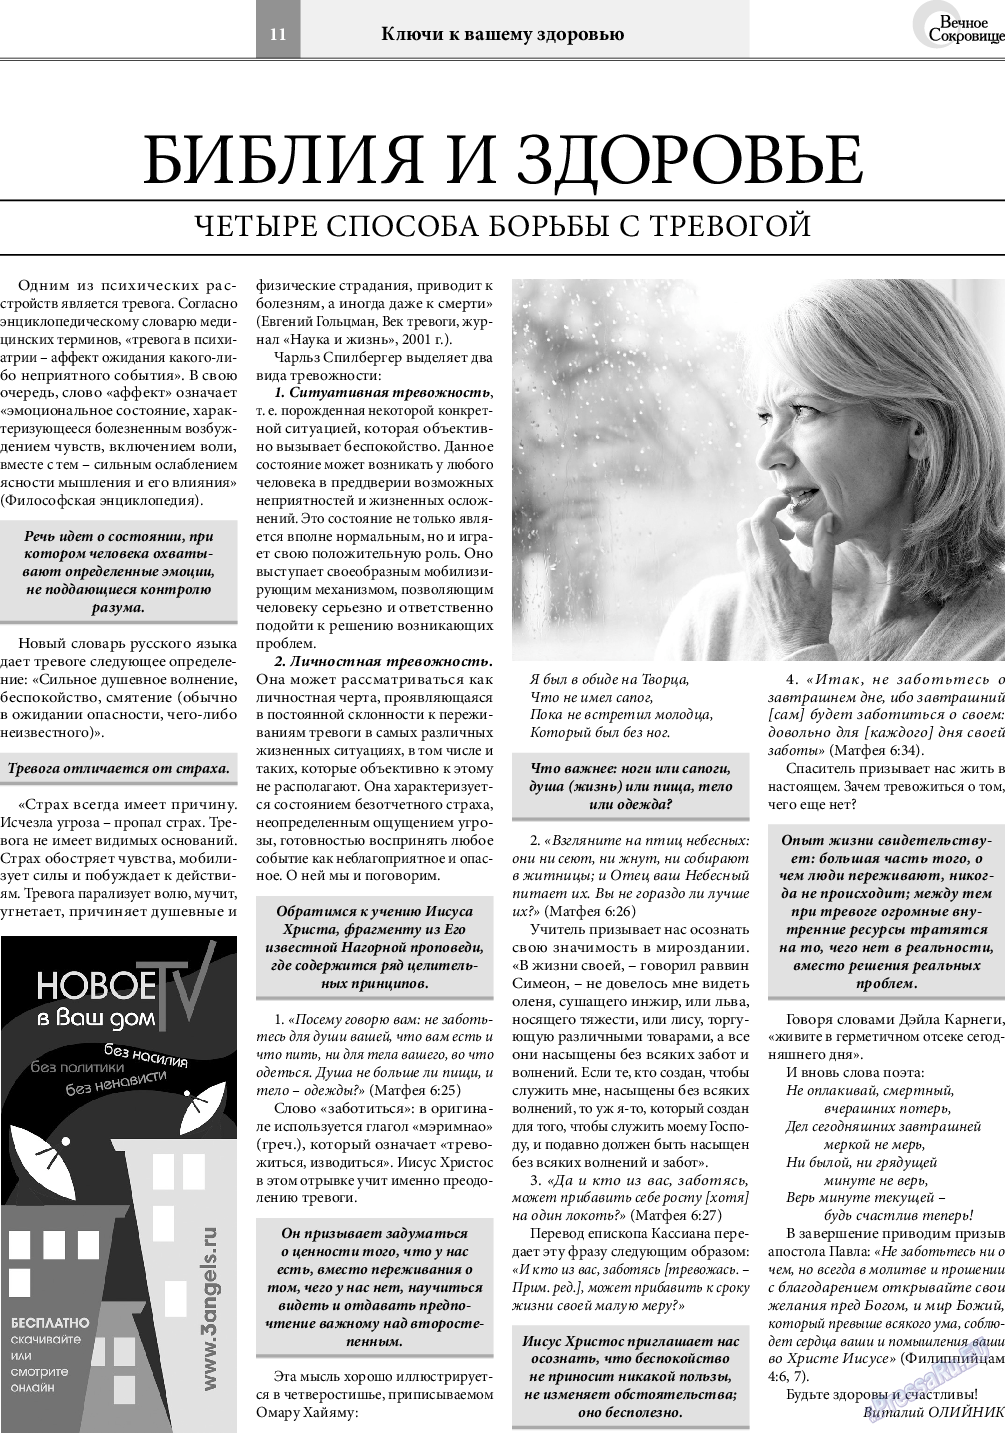 Вечное сокровище (газета). 2019 год, номер 3, стр. 11